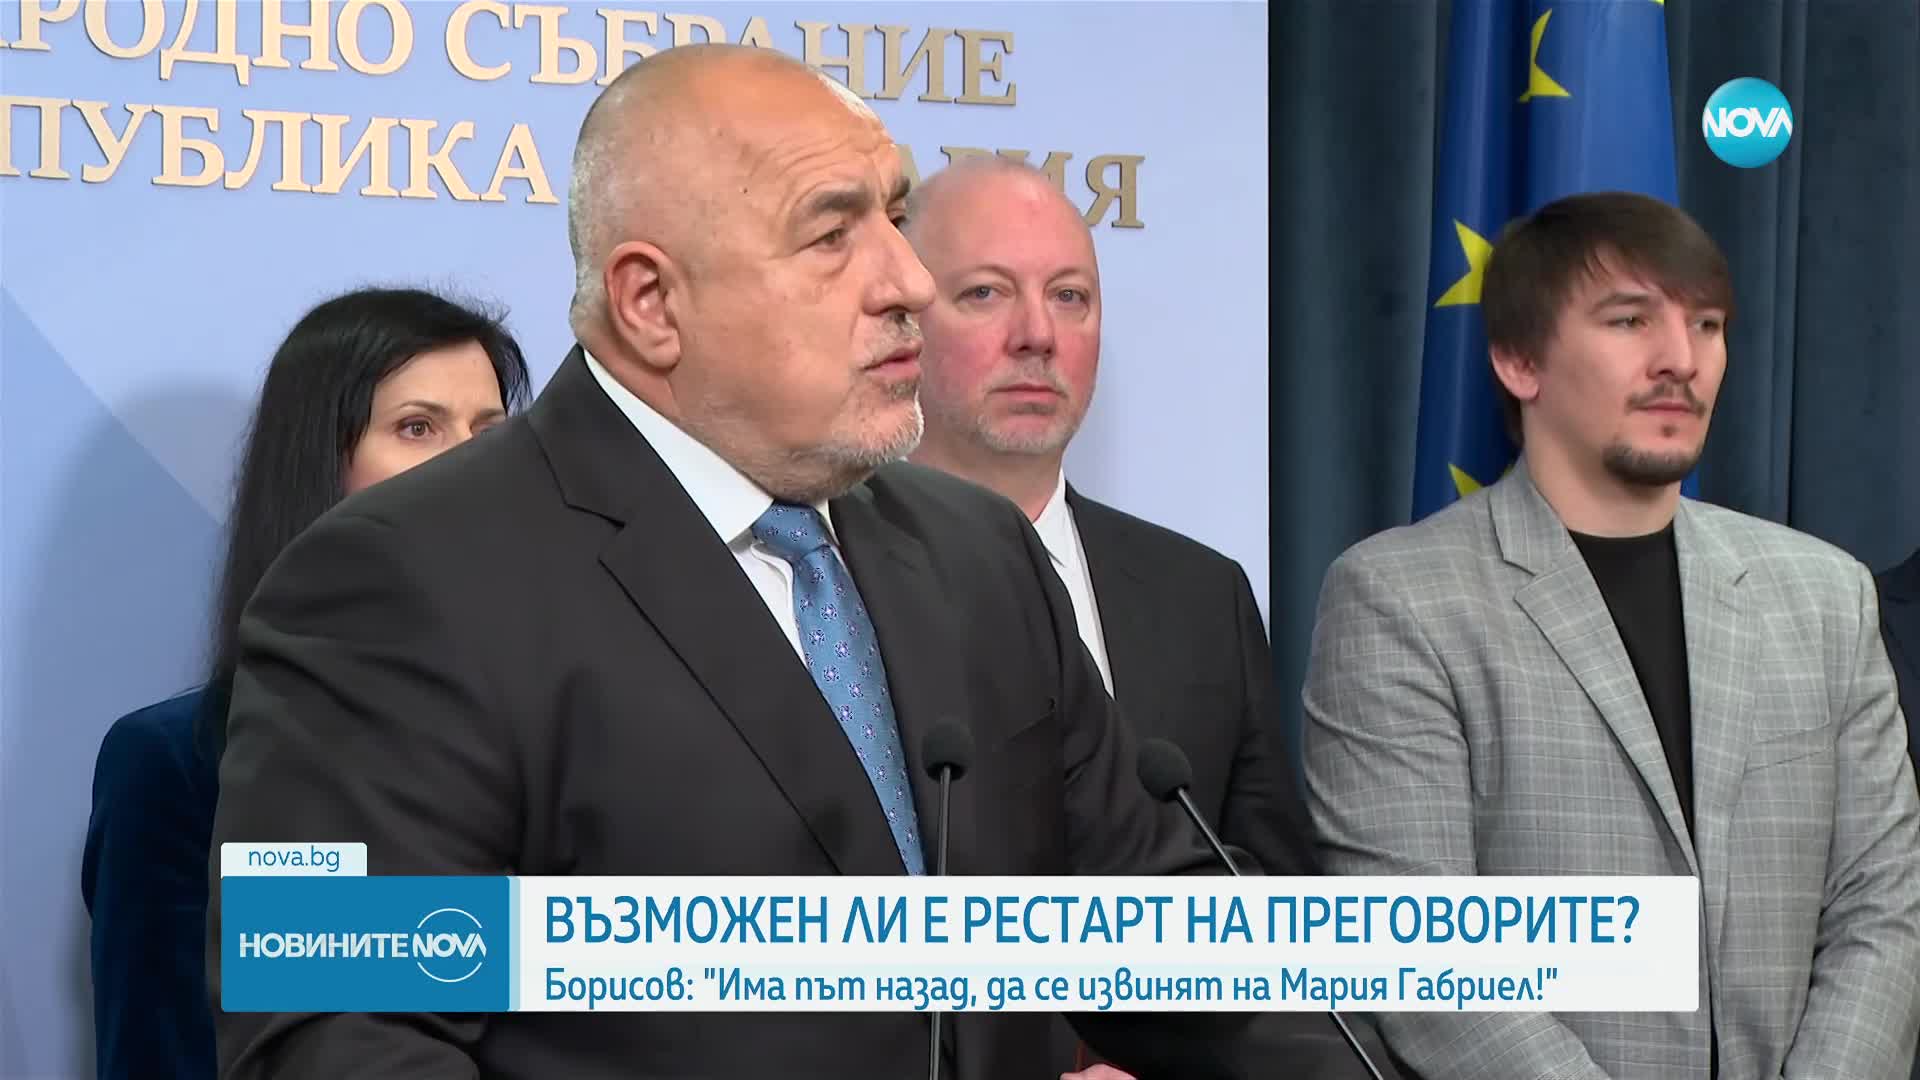 Борисов: Път назад има, но той минава през извинение за обидите